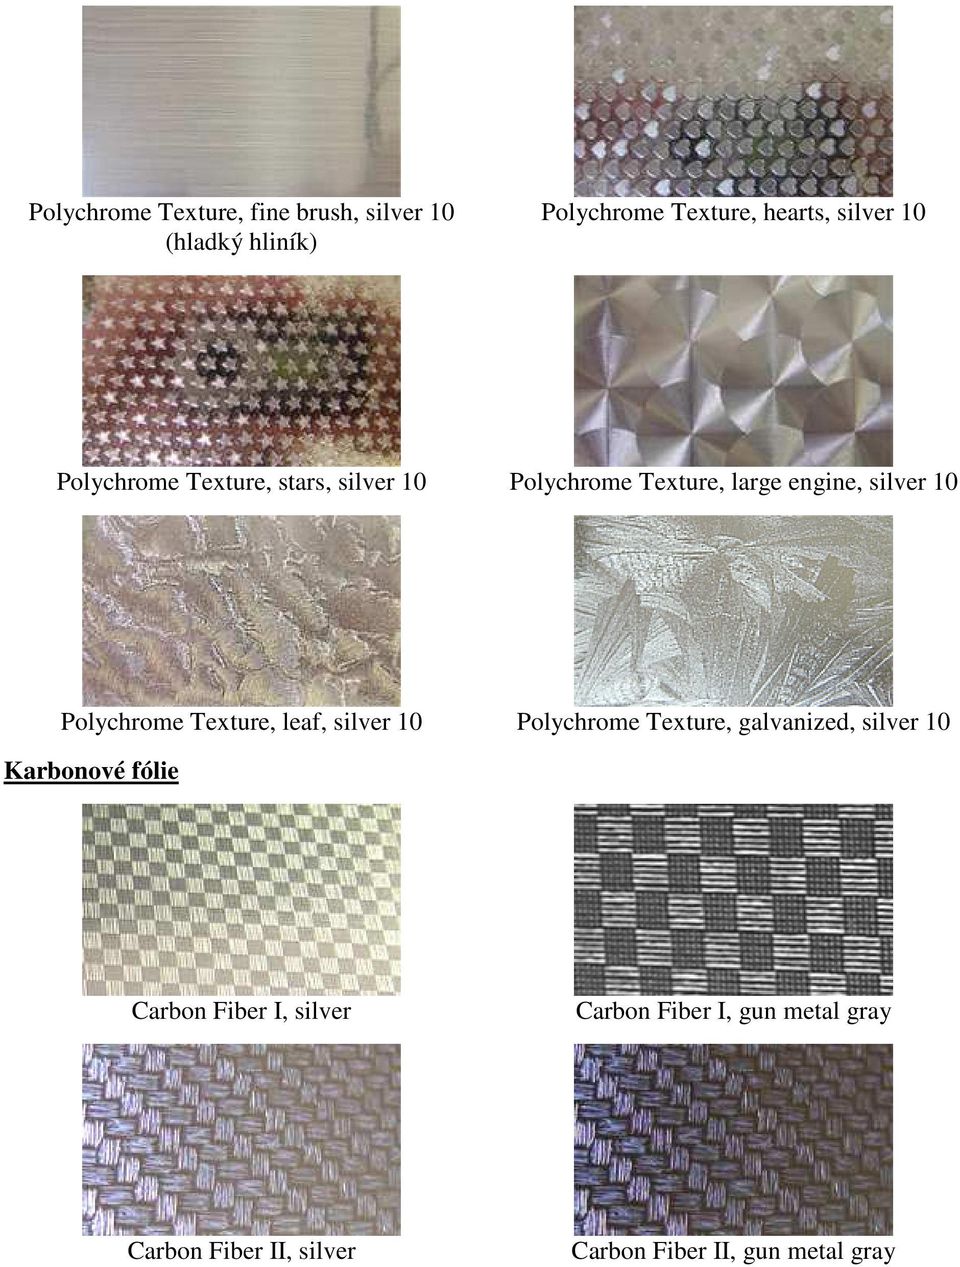 Texture, leaf, silver 10 Polychrome Texture, galvanized, silver 10 Karbonové fólie Carbon